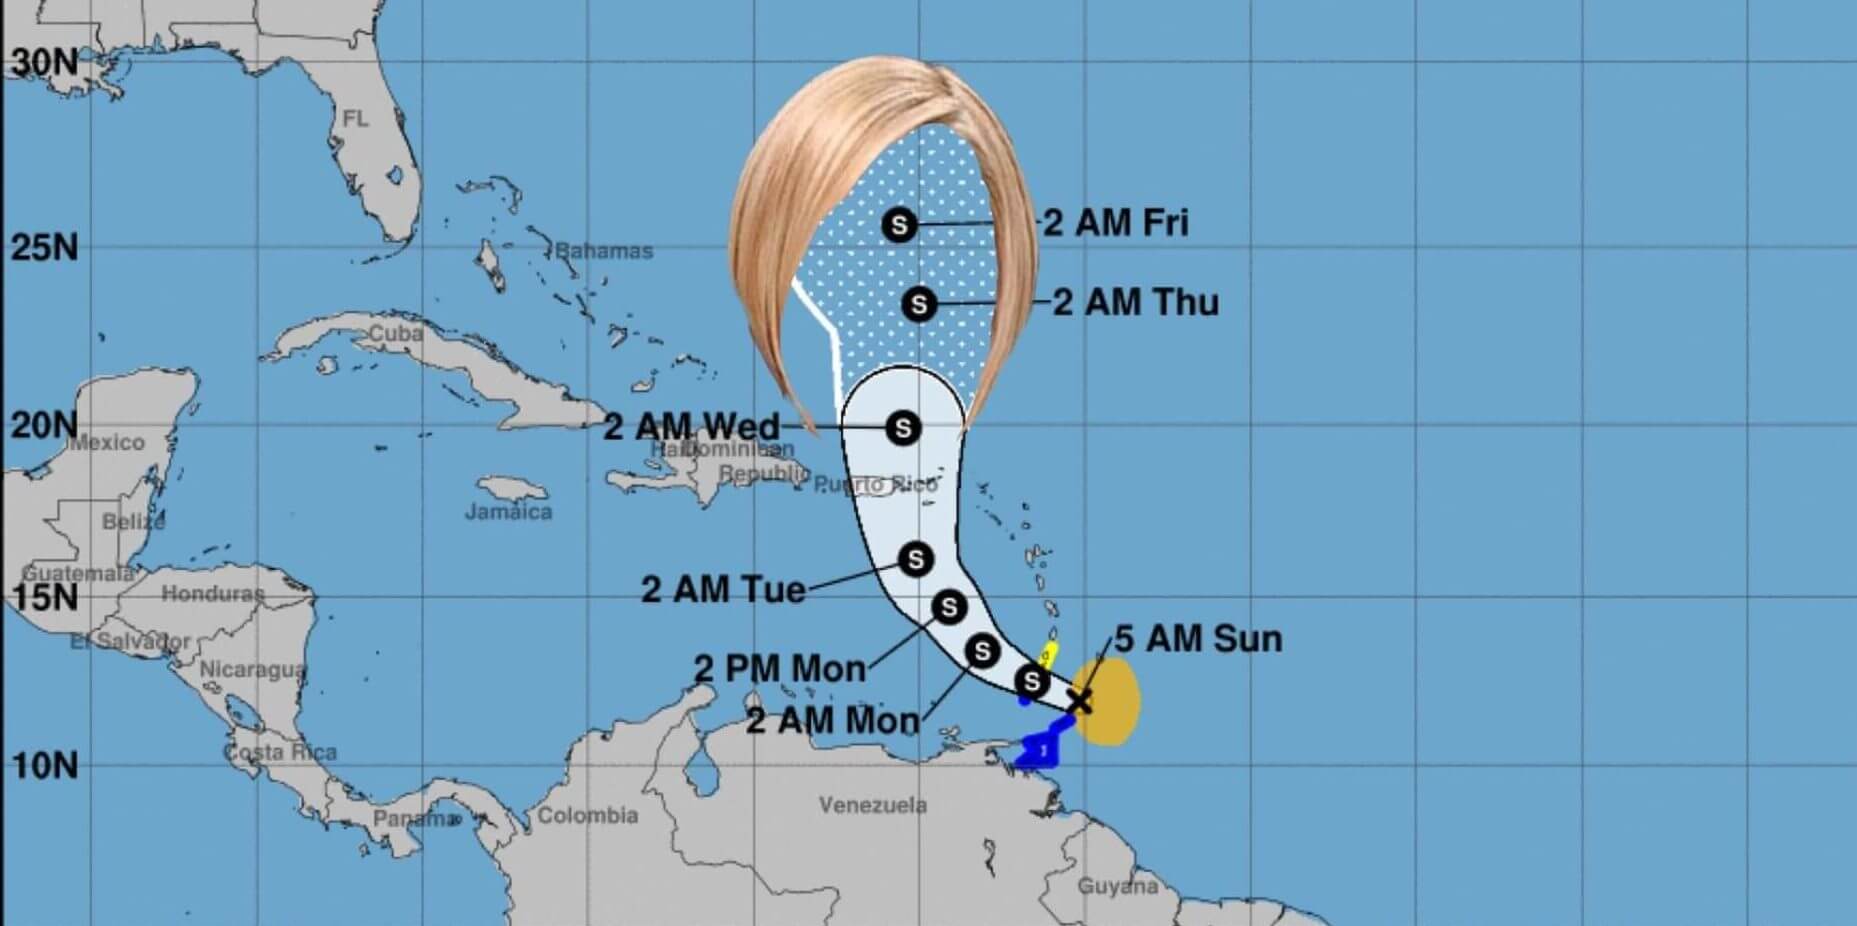 tropical storm it meme